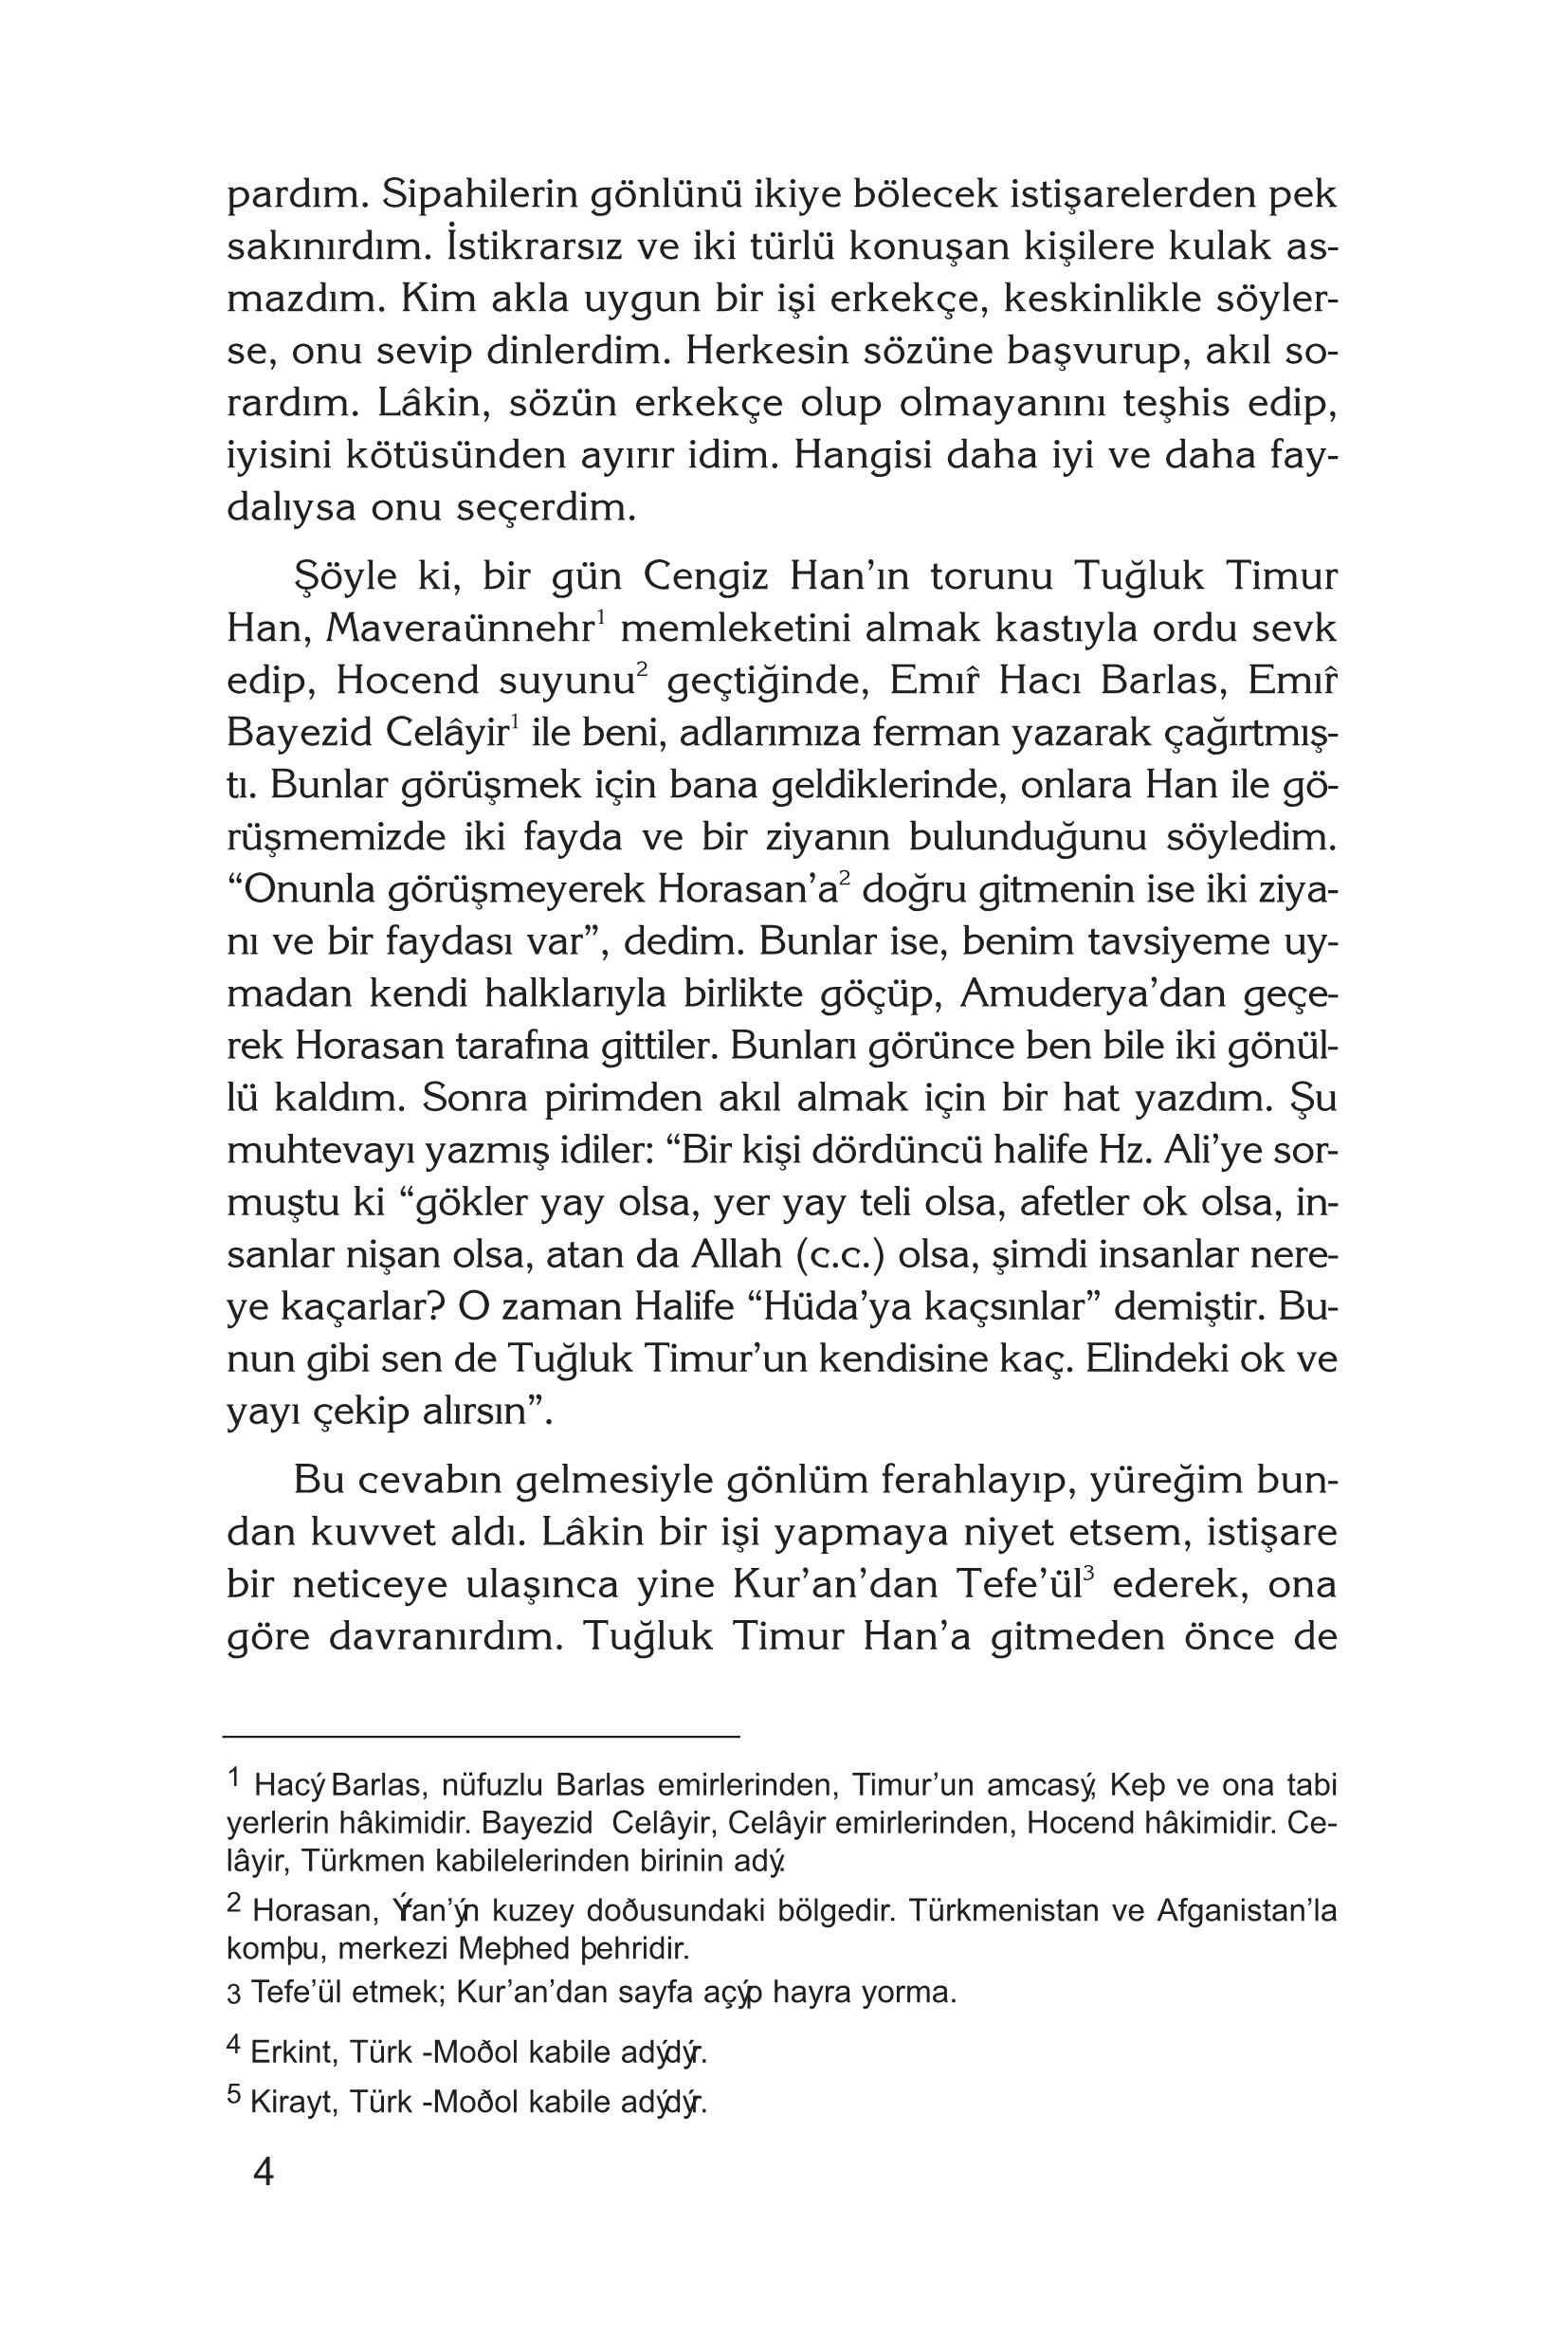 Tüzükat-i Timur - Timurun Gunlugu ve Basari Prensipleri - KaynakYayinlari.pdf, 163-Sayfa 